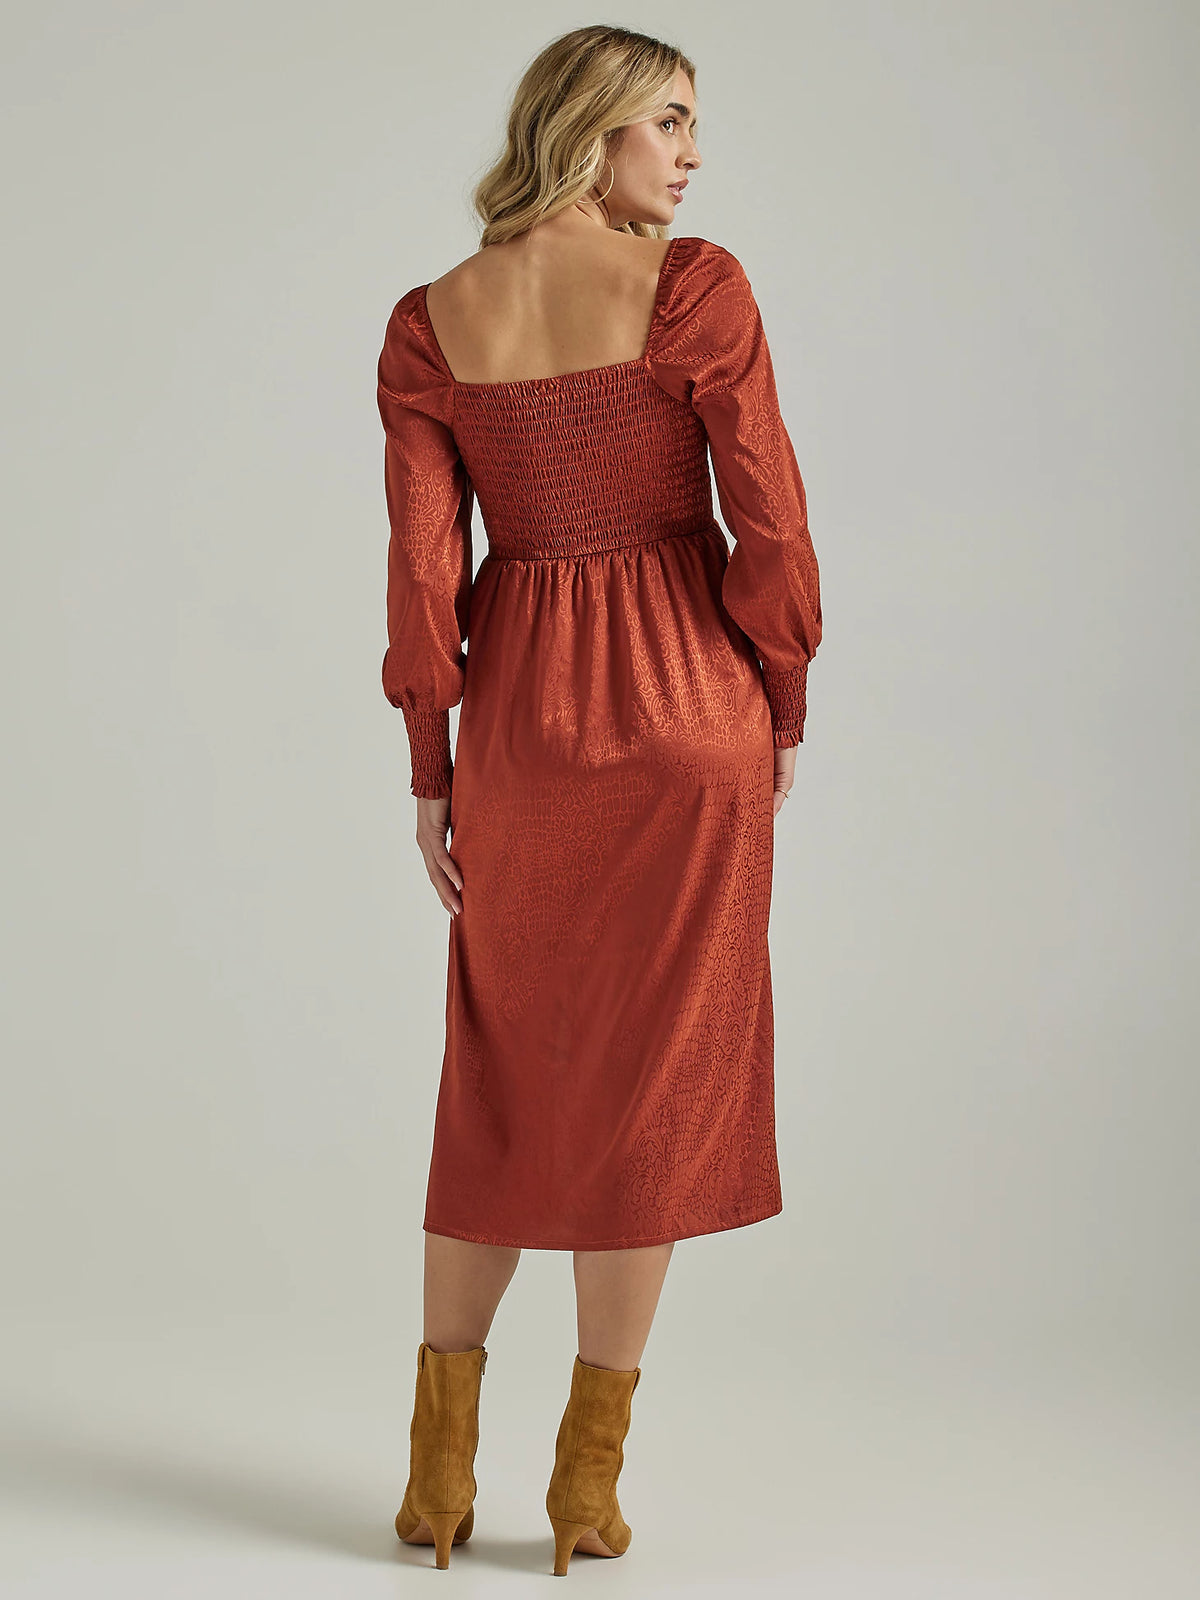 Wrangler Retro Women's Shine Smocked Bodice Dress in Mahogany